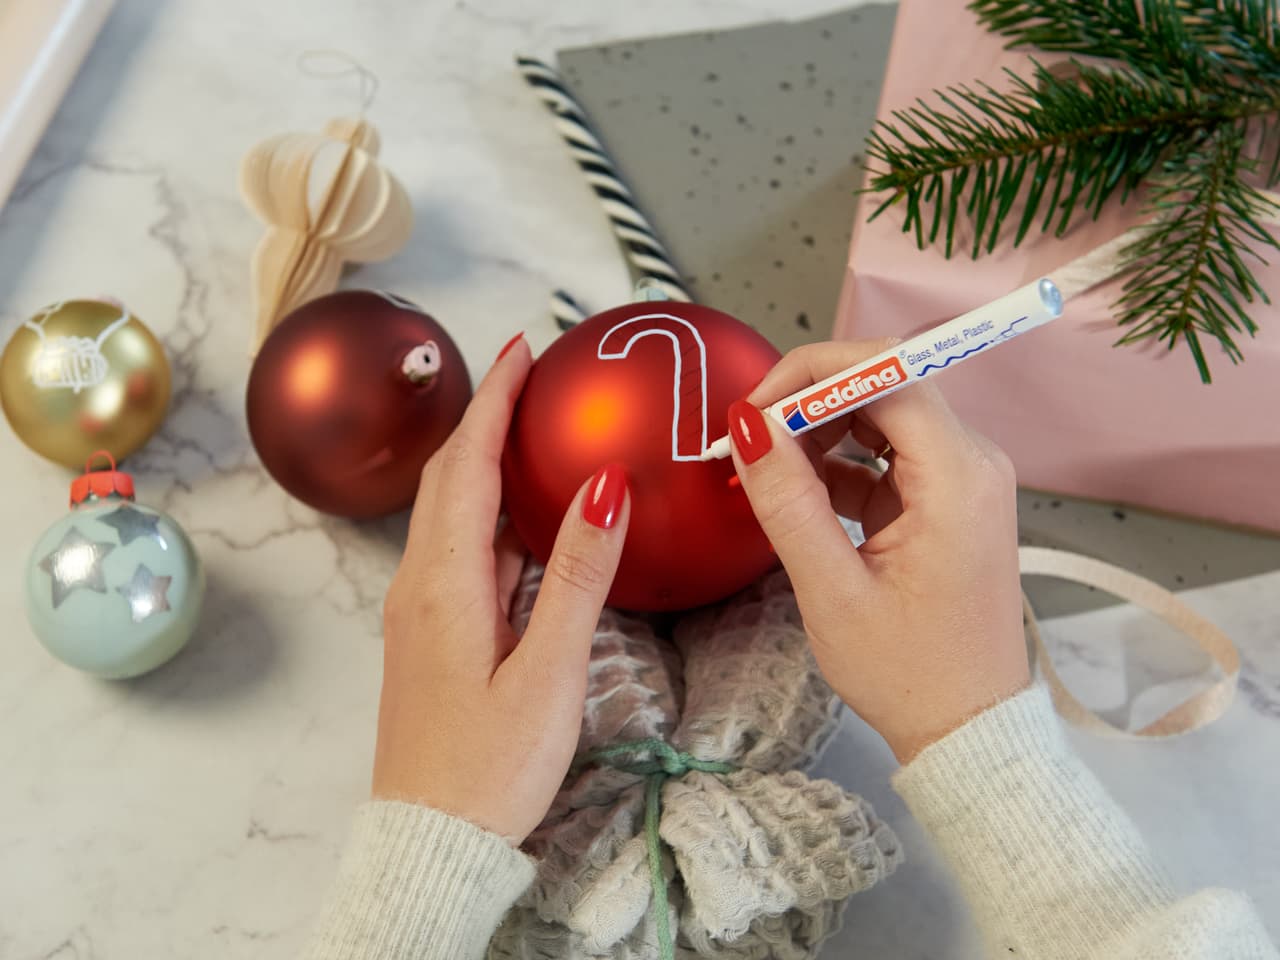 Hände mit rotem Nagellack personalisieren einen Weihnachtsschmuck mit einem edding 751 Glanzlackmarker, umgeben von festlichen Dekorationen.